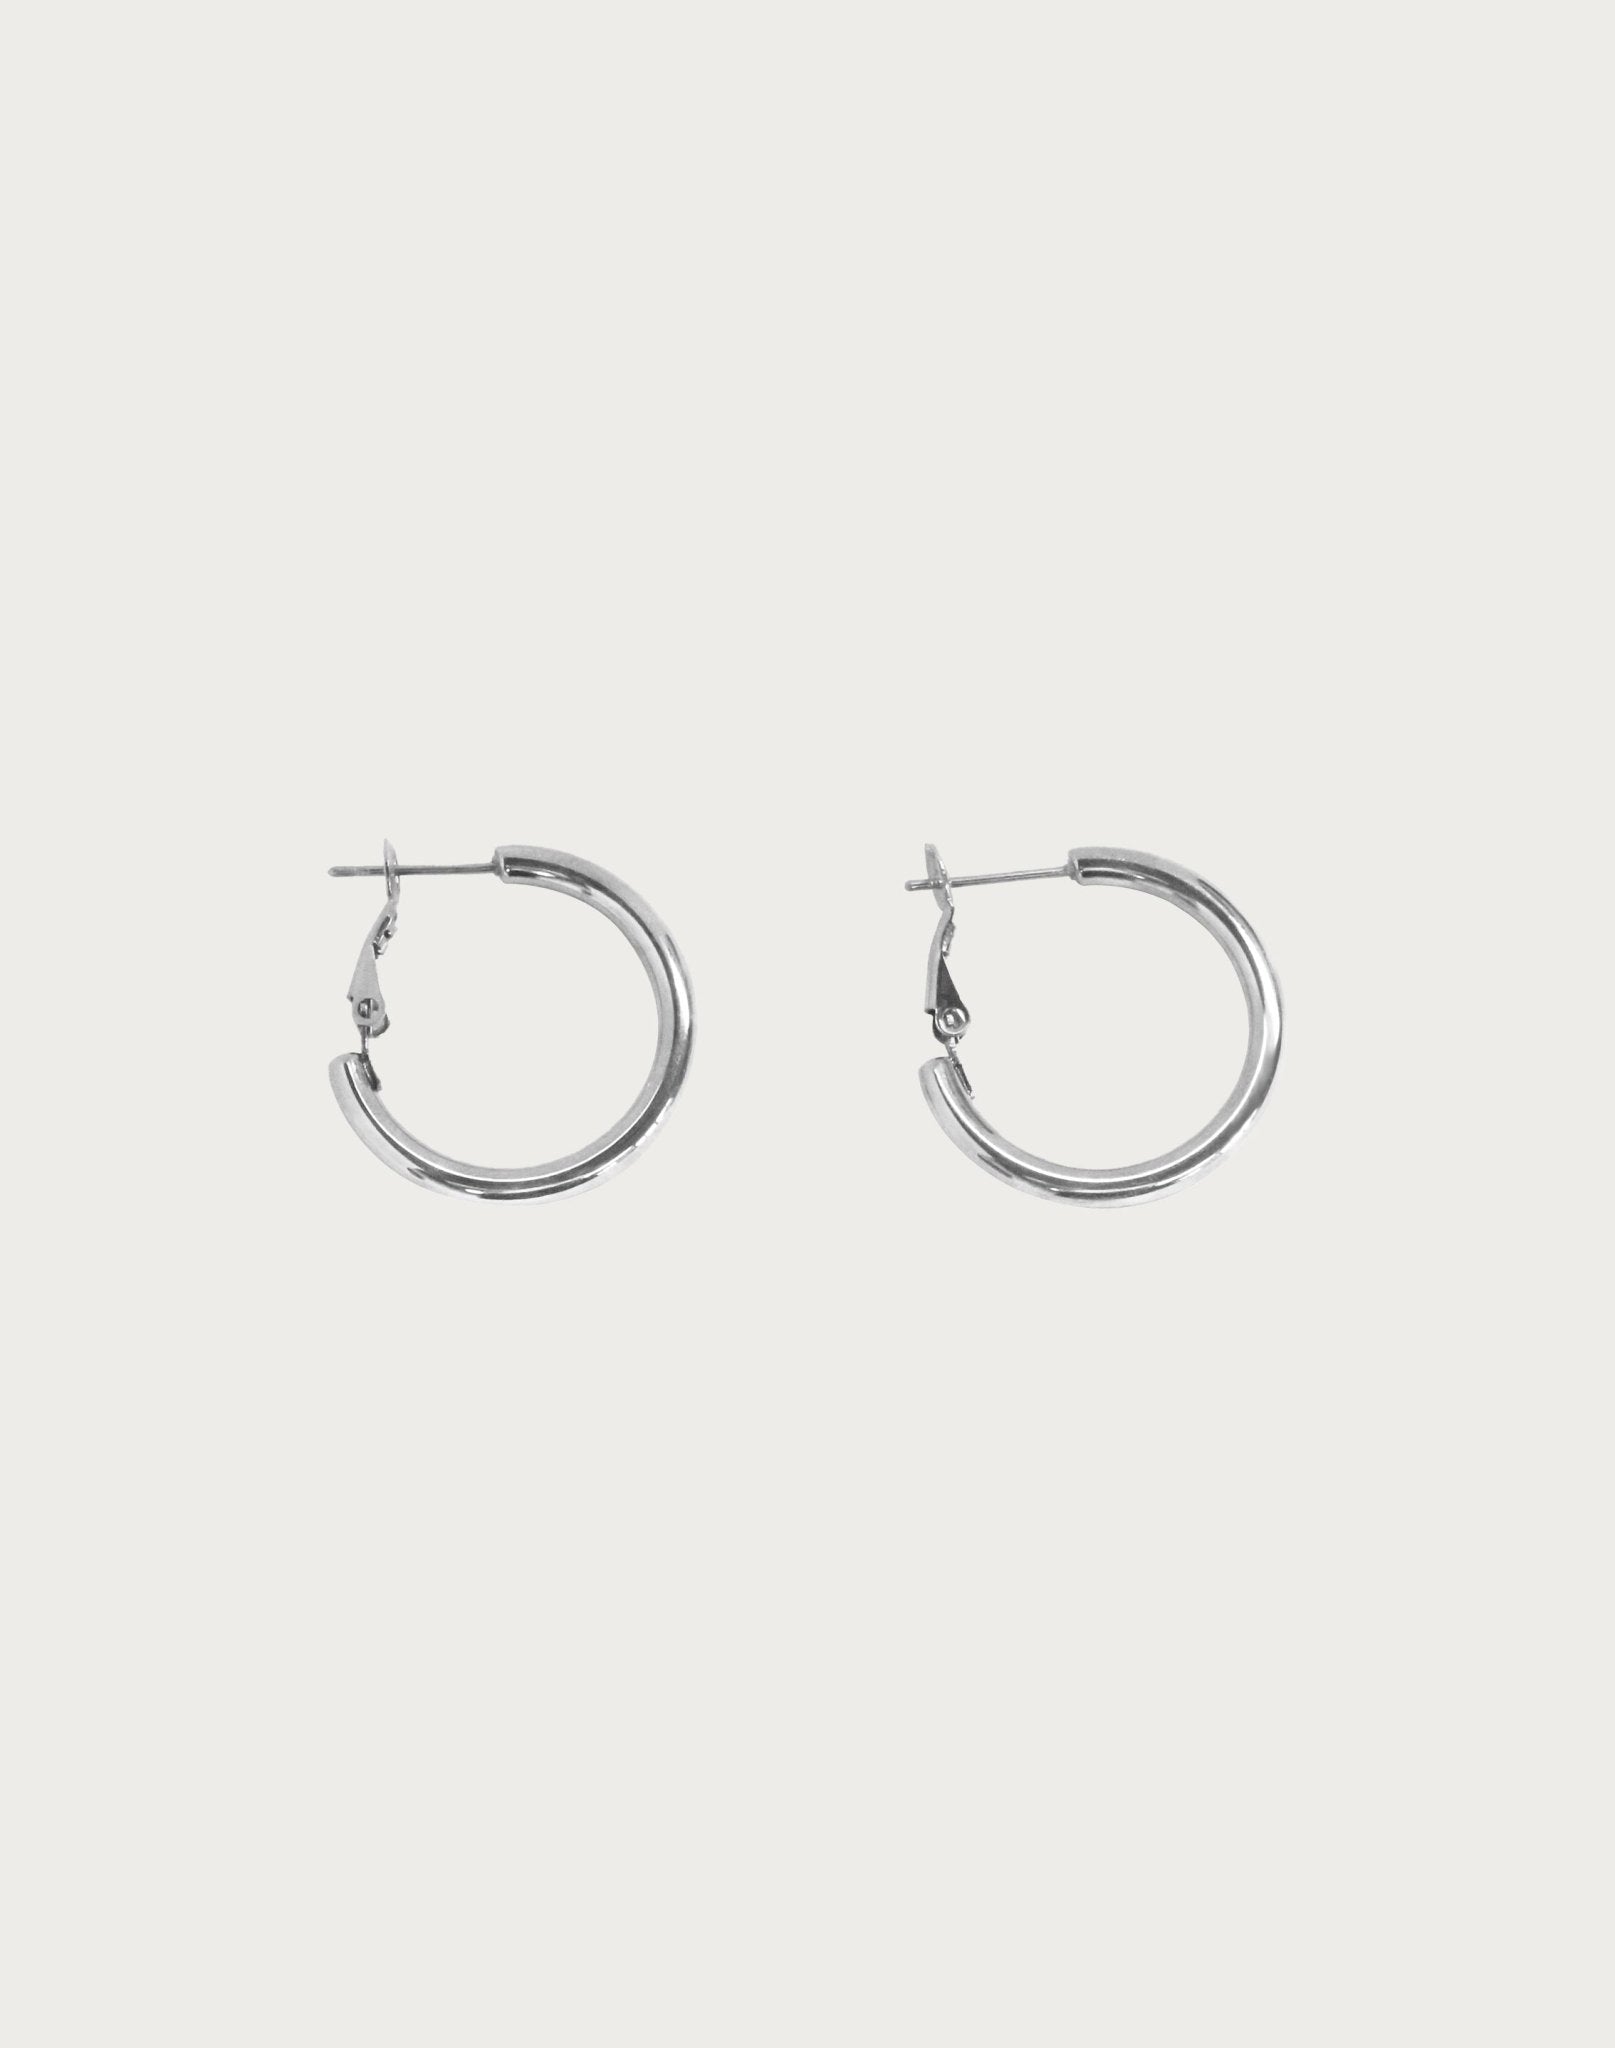 20mm Endless Hoop Earrings in Silver Earrings En Route Jewelry 